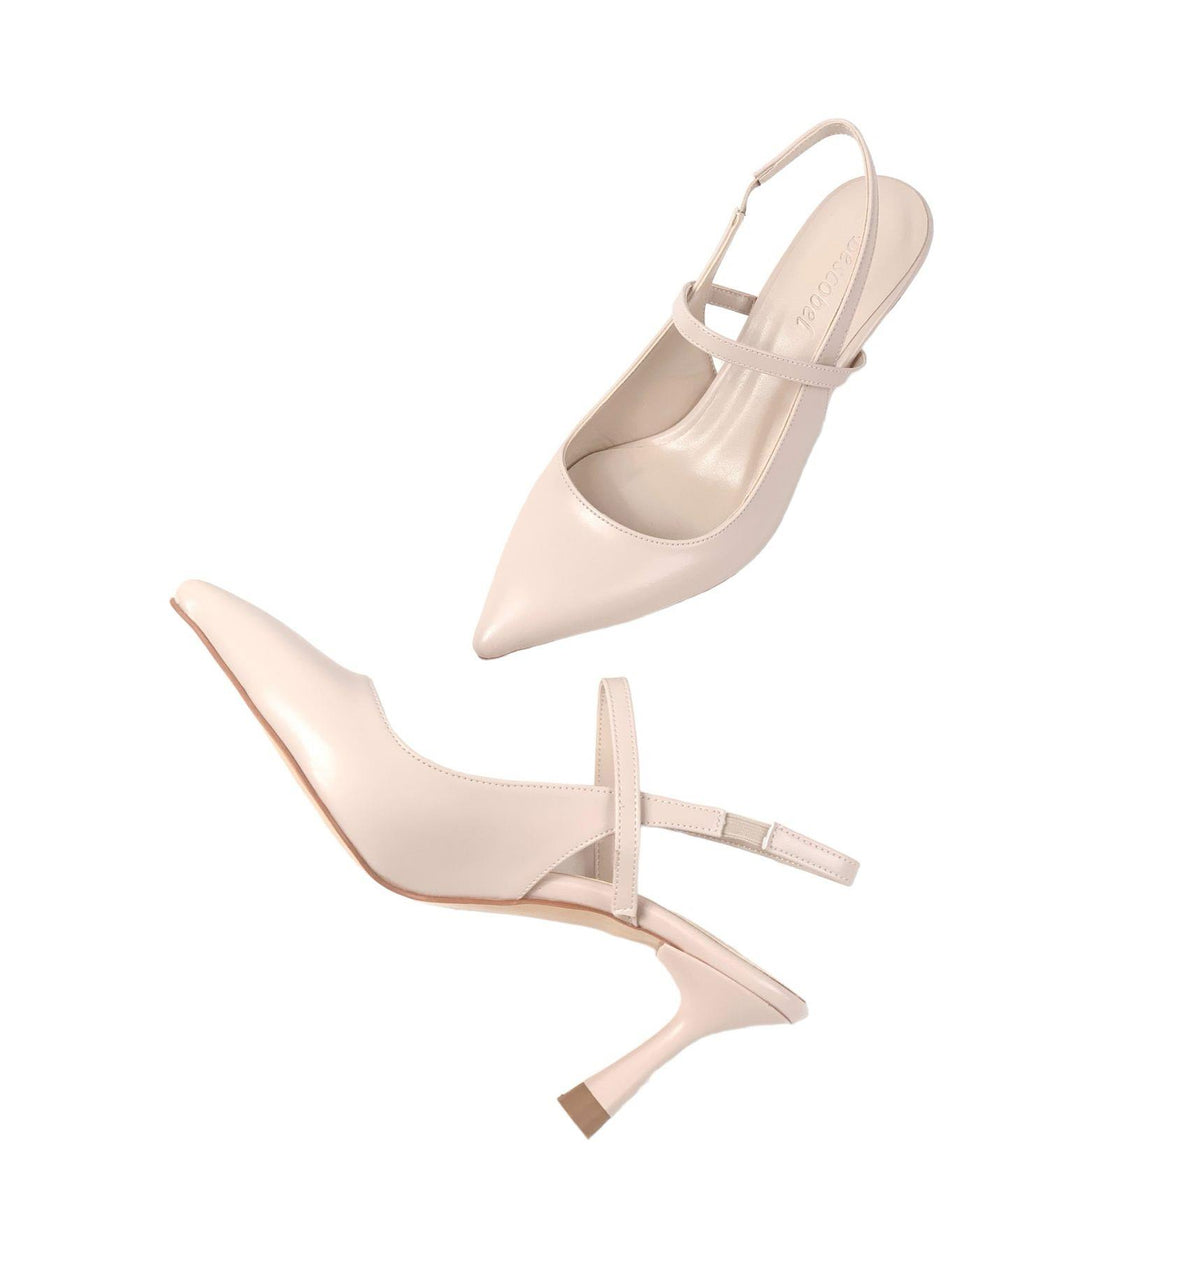 Women's Olvan Skin Skin Thin Heel Shoes Sandals 7 Cm Heel - STREETMODE™